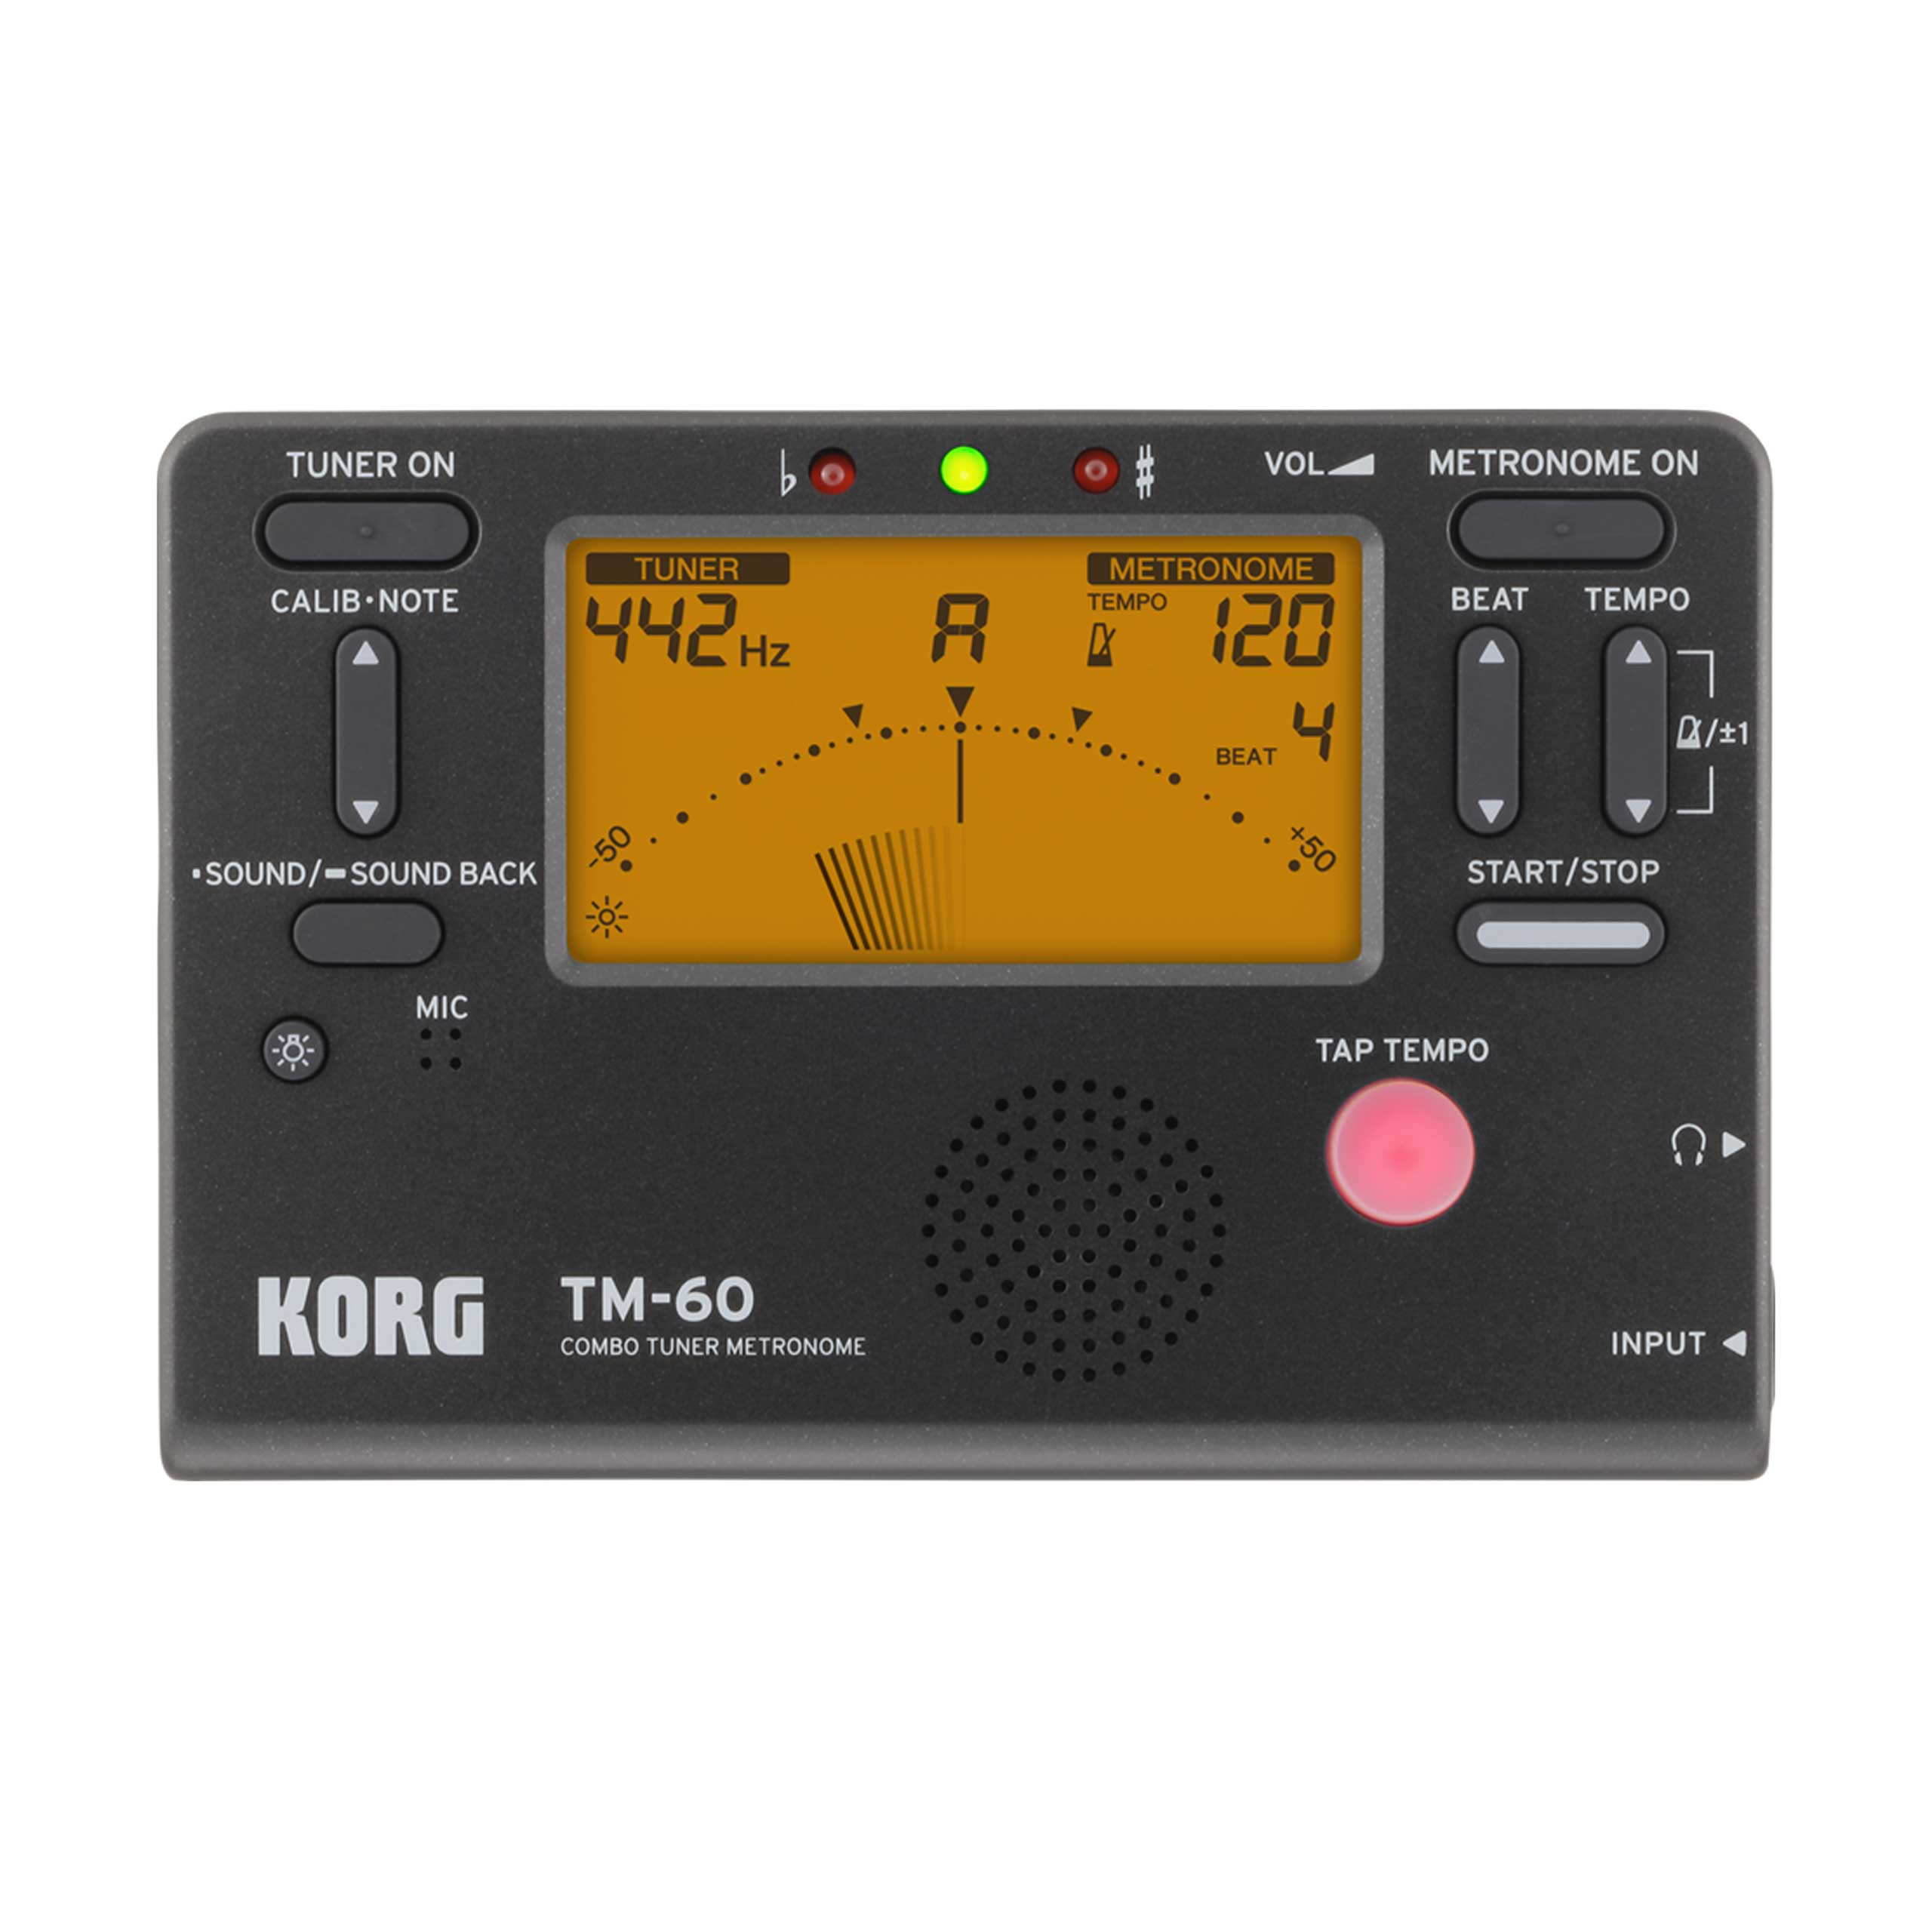 Korg TM-60 Combo Tuner Metronome in Black